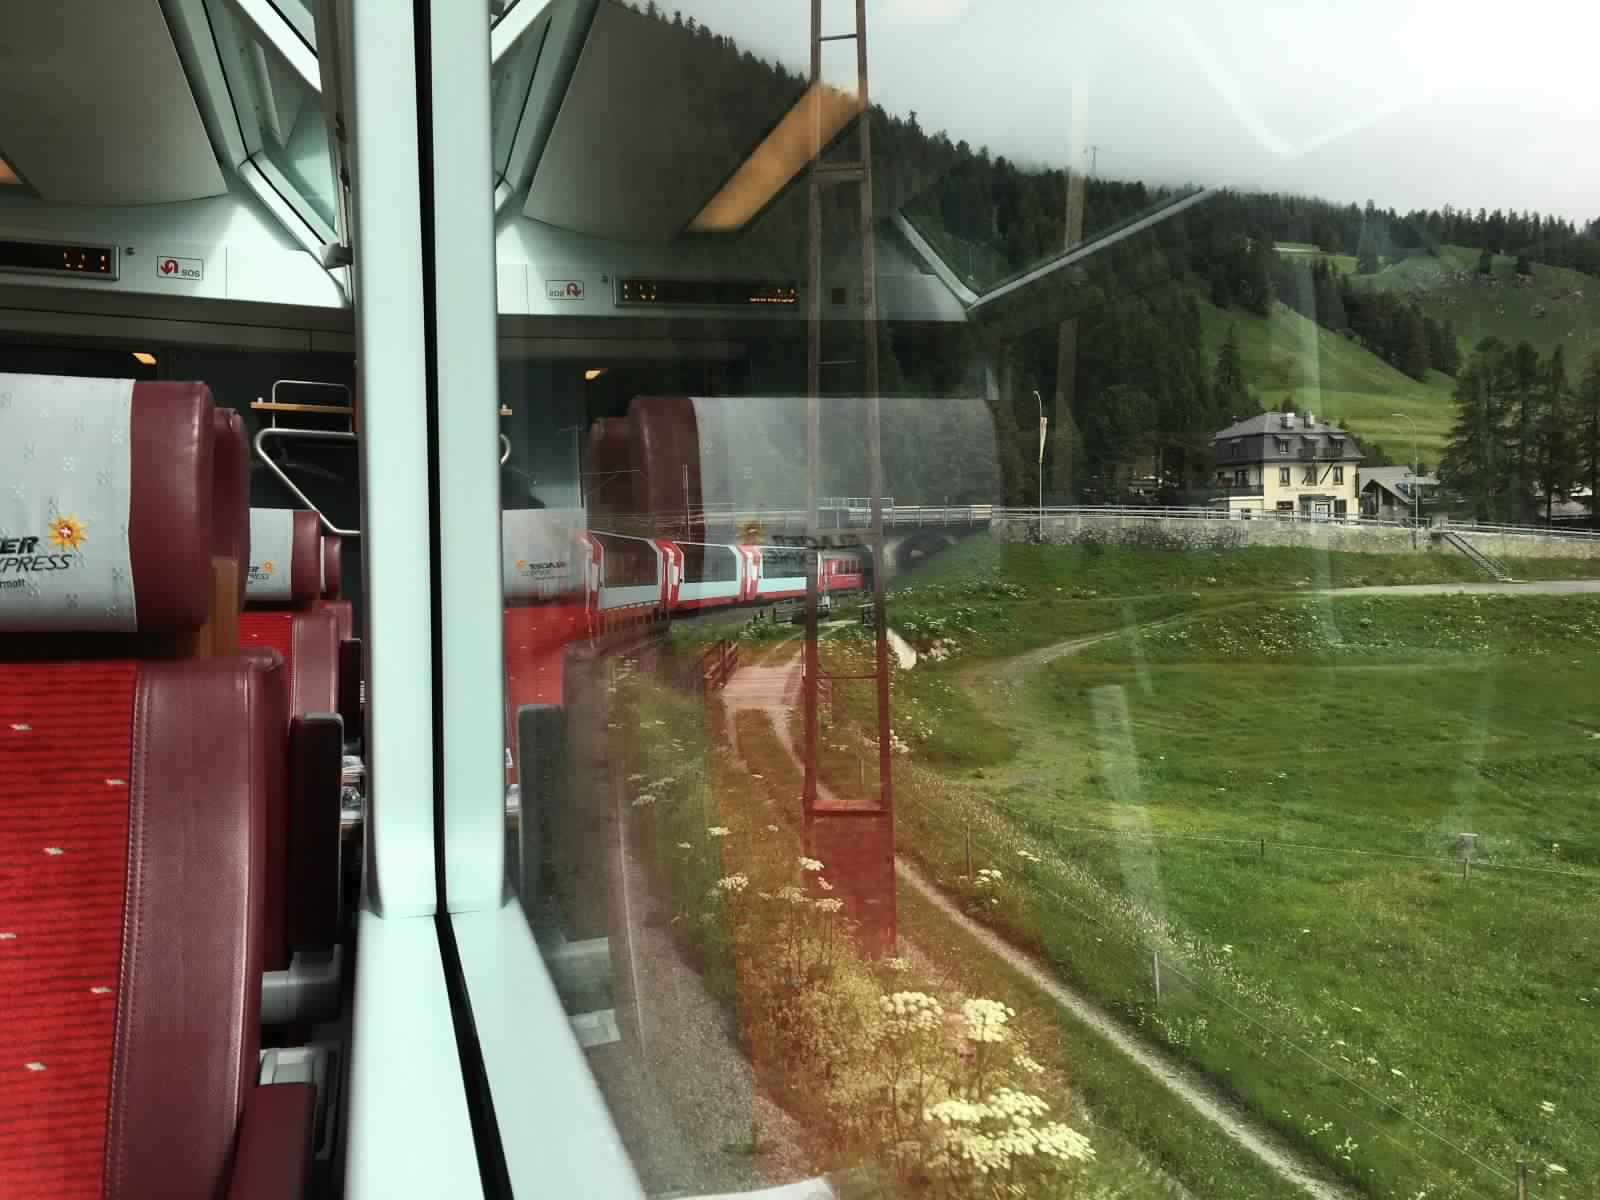 "بالصور" جولة مع قطار جلاسير إكسبريس عبر جبال اﻷلب السويسرية 4